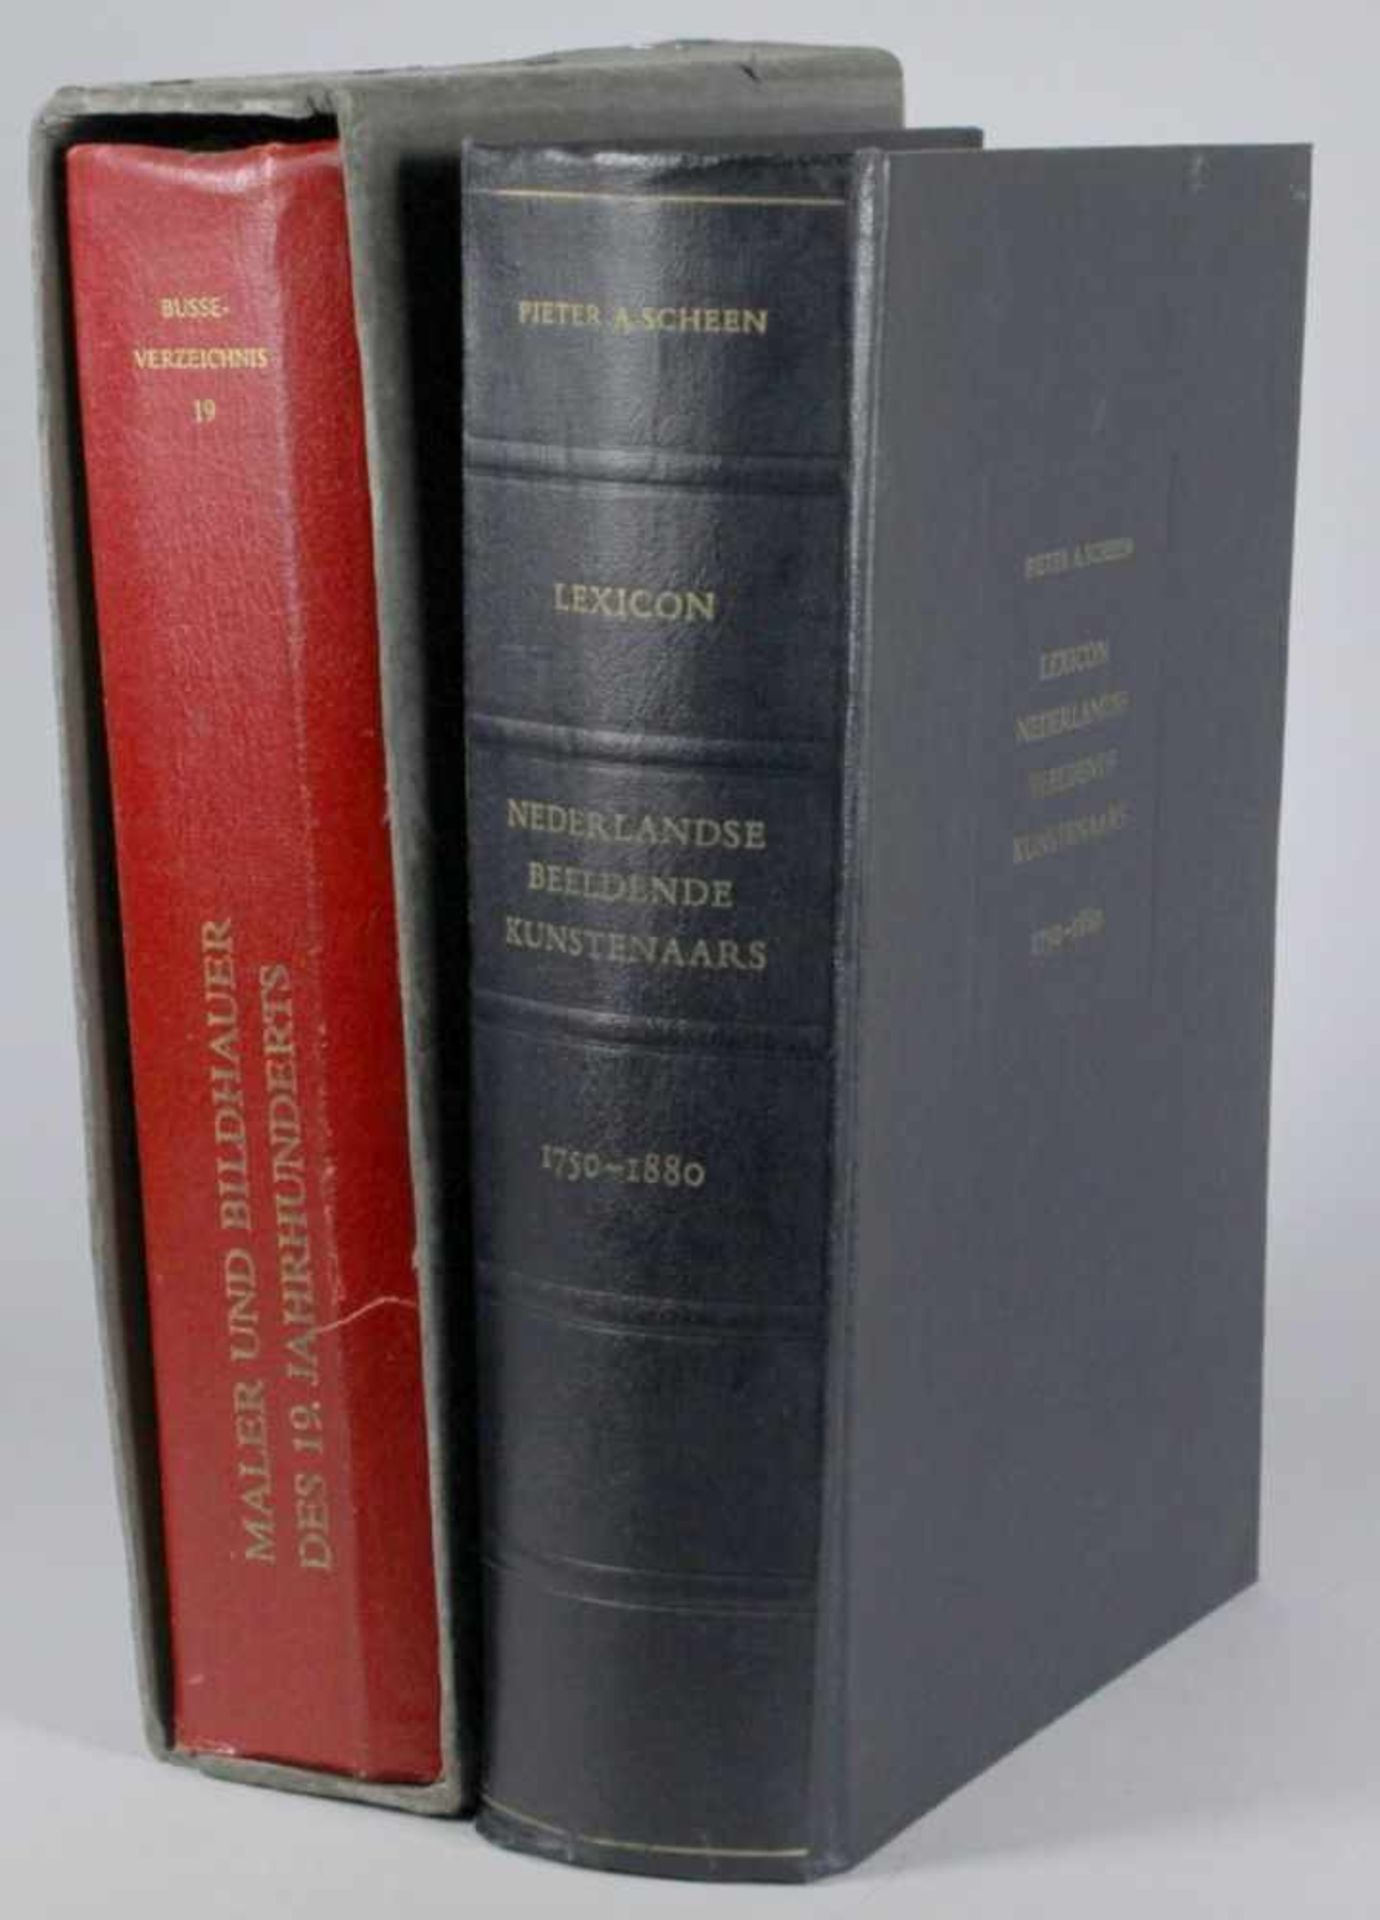 Zwei Bücher, Busse, Bildhauer und Maler des 19. Jh. und Pieter A. Scheen, NiederländischeBildende